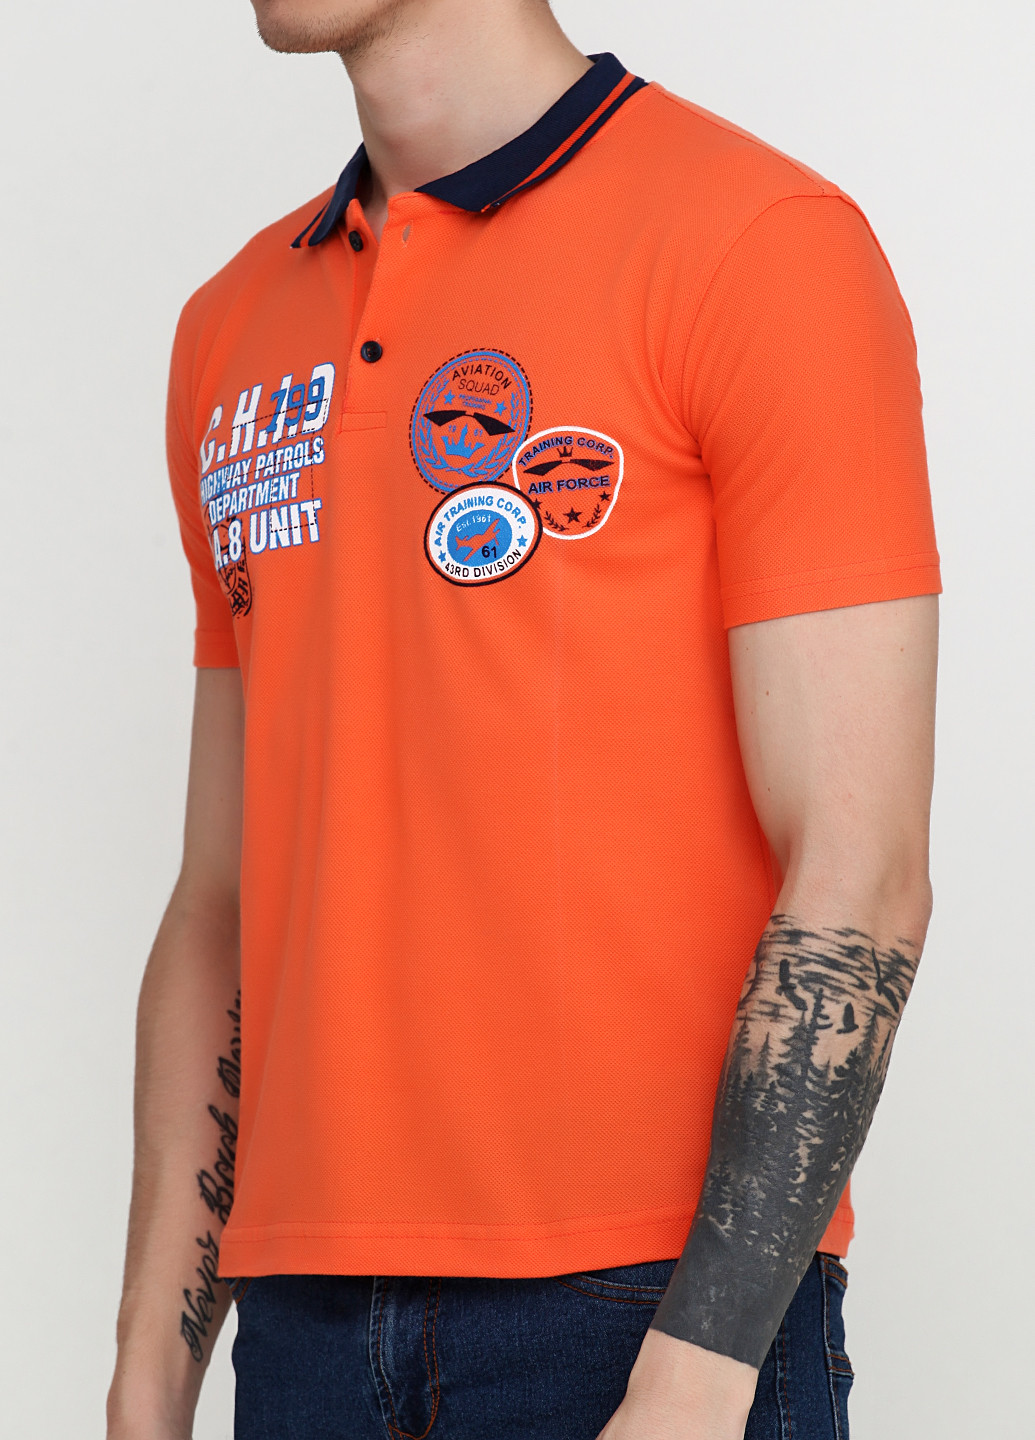 Оранжевая футболка-поло для мужчин West Wint с надписью